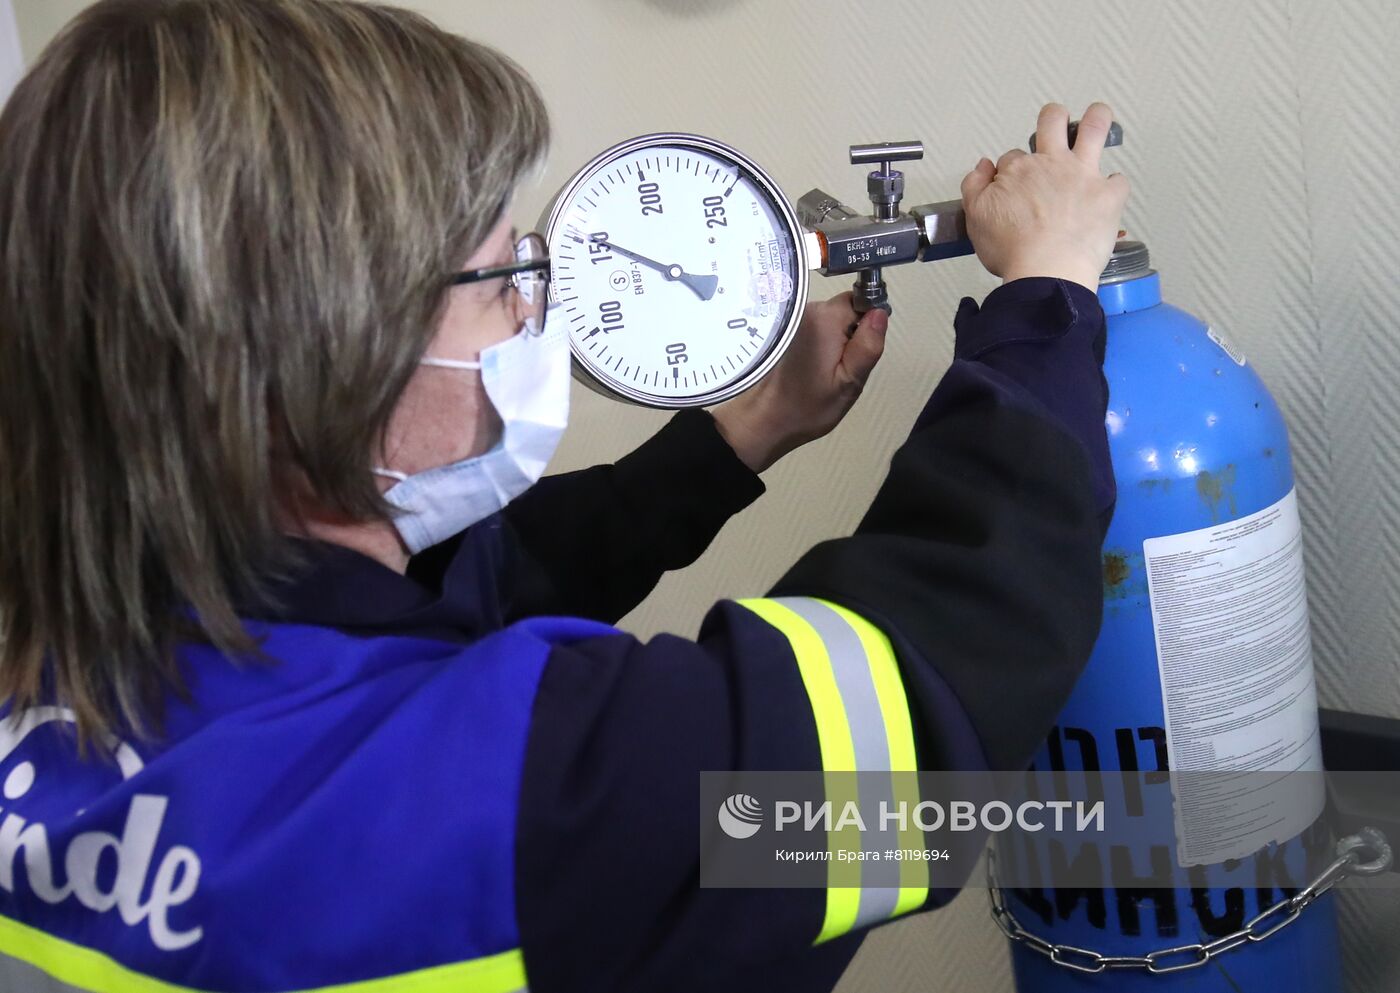 Производство медицинского кислорода в Волгограде